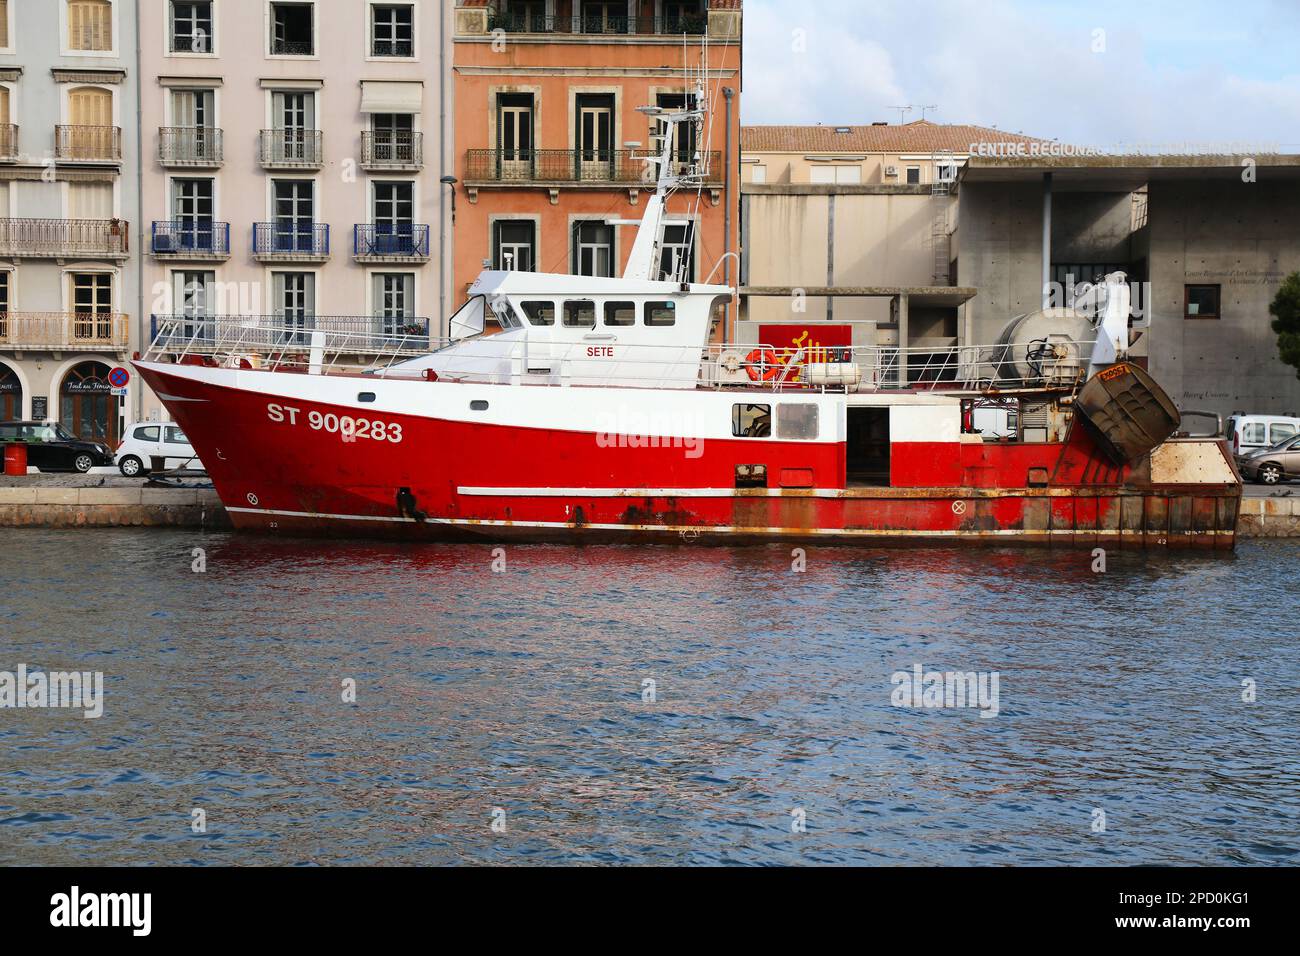 SETE, FRANKREICH - 2. OKTOBER 2021: Grundschleppnetzfischereifahrzeug in Sete, Frankreich. Sete ist eine berühmte Hafenstadt im französischen Departement Herault. Stockfoto